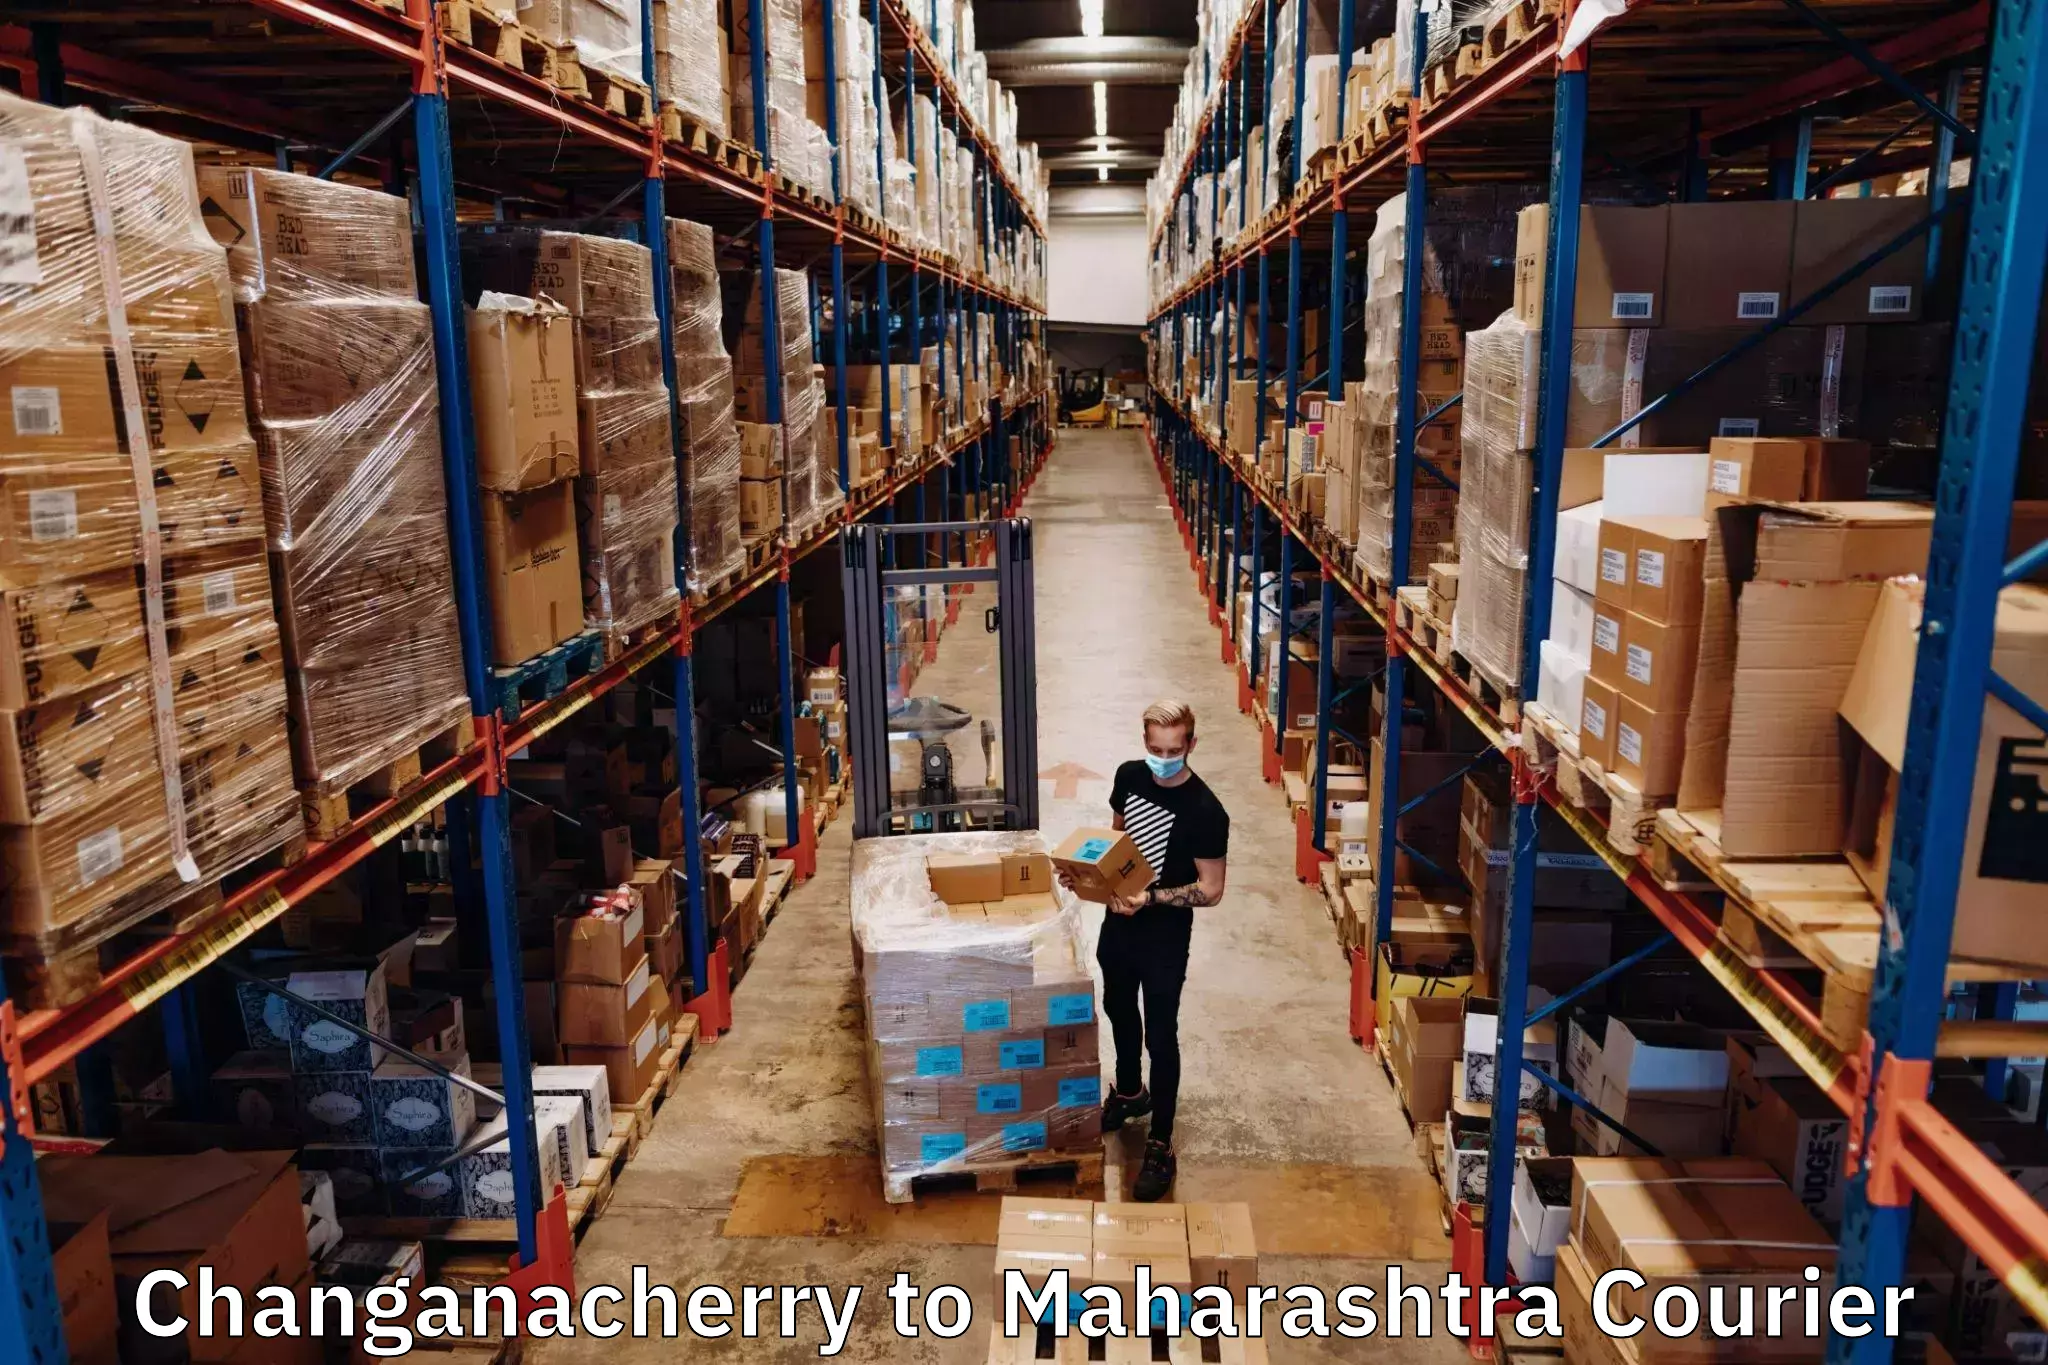 Expedited shipping methods Changanacherry to Nagpur